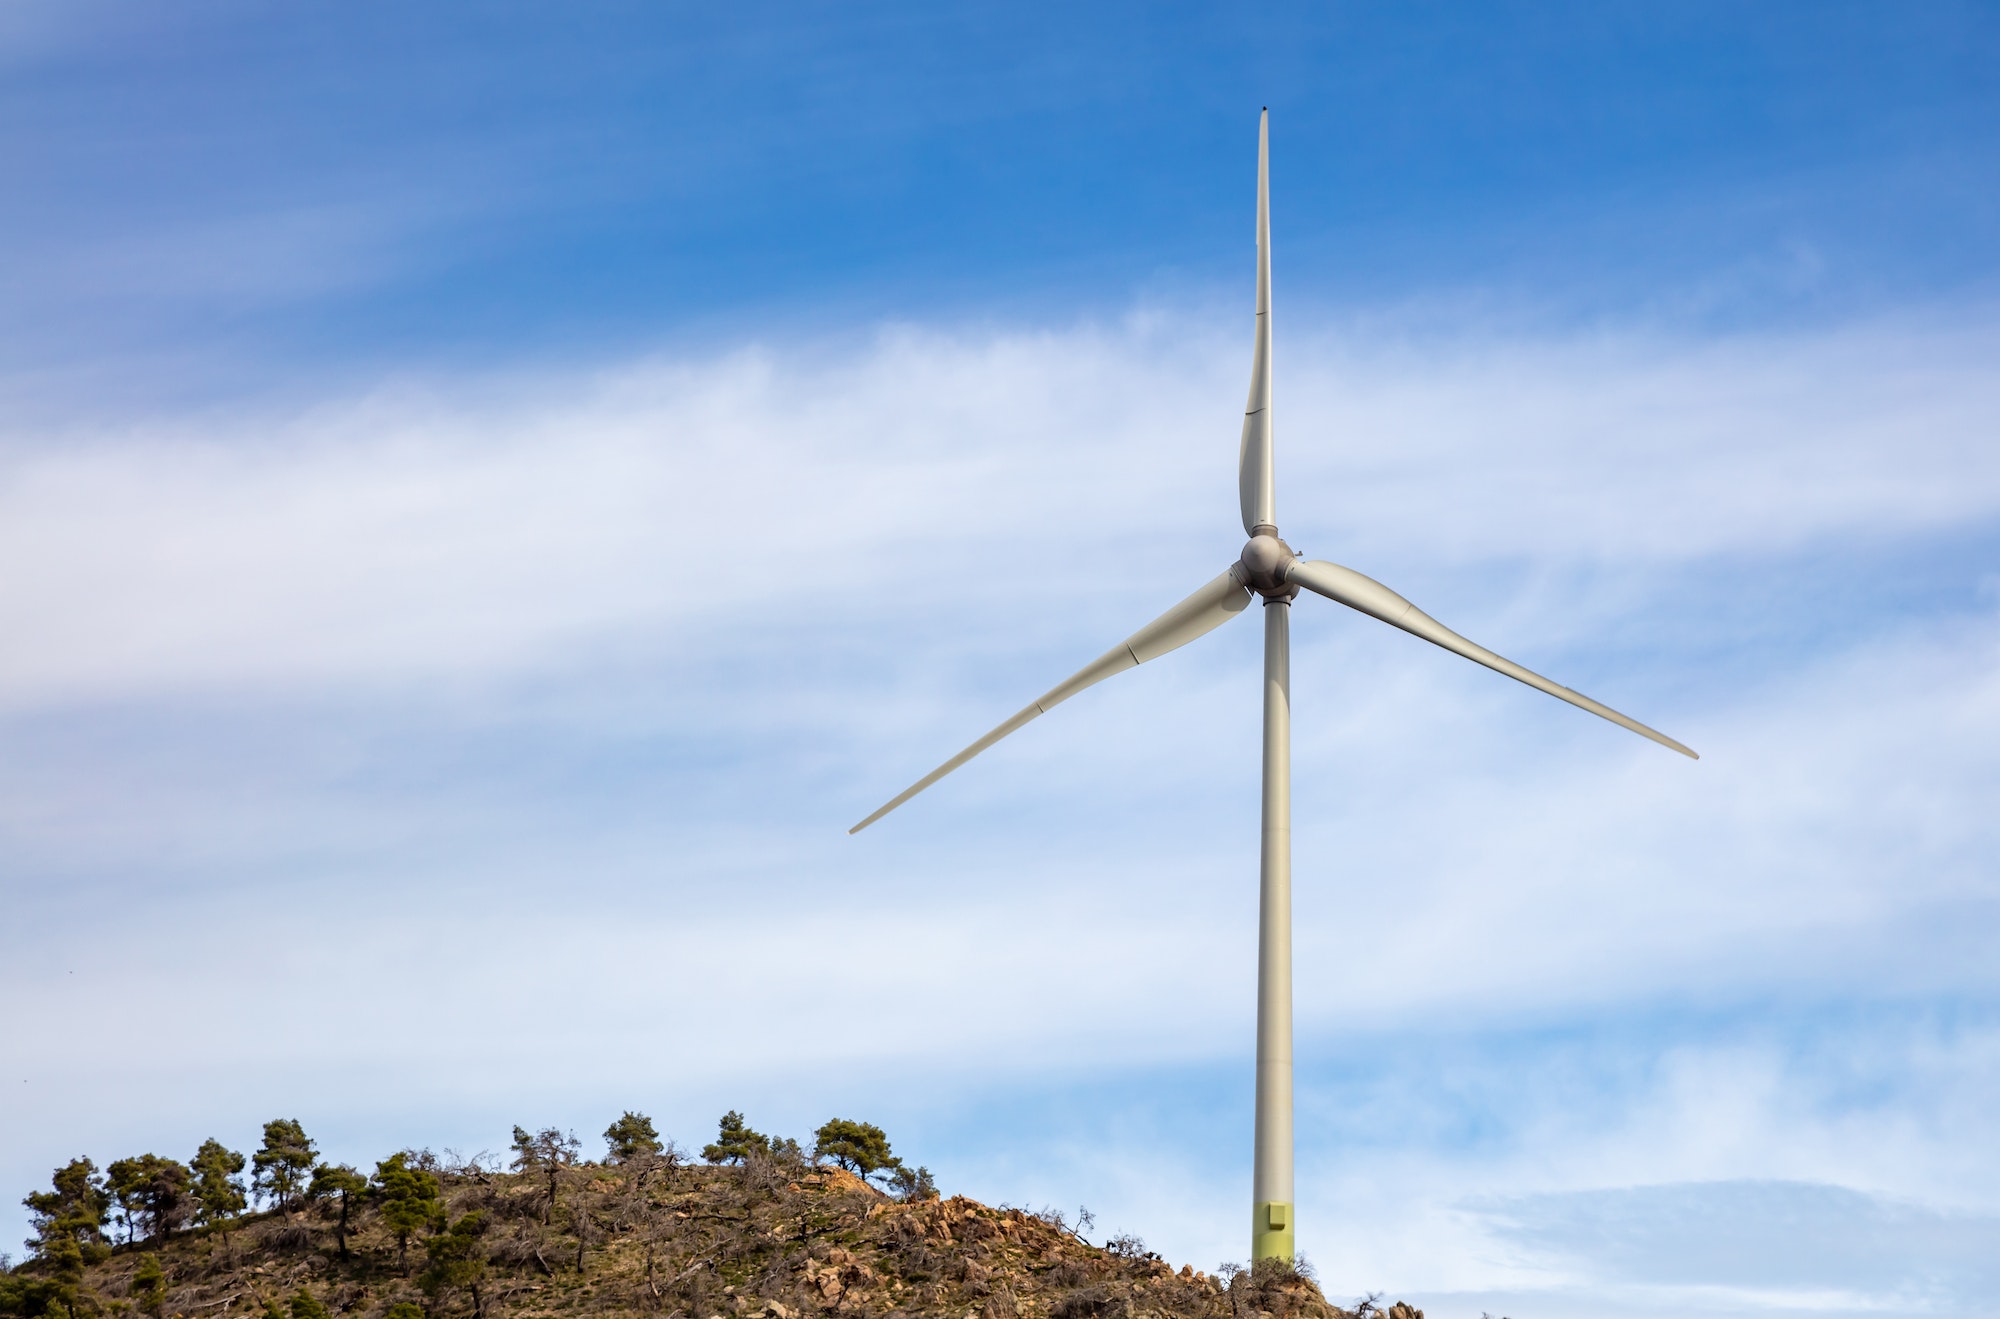 Single wind turbine located on a rocky hilltop